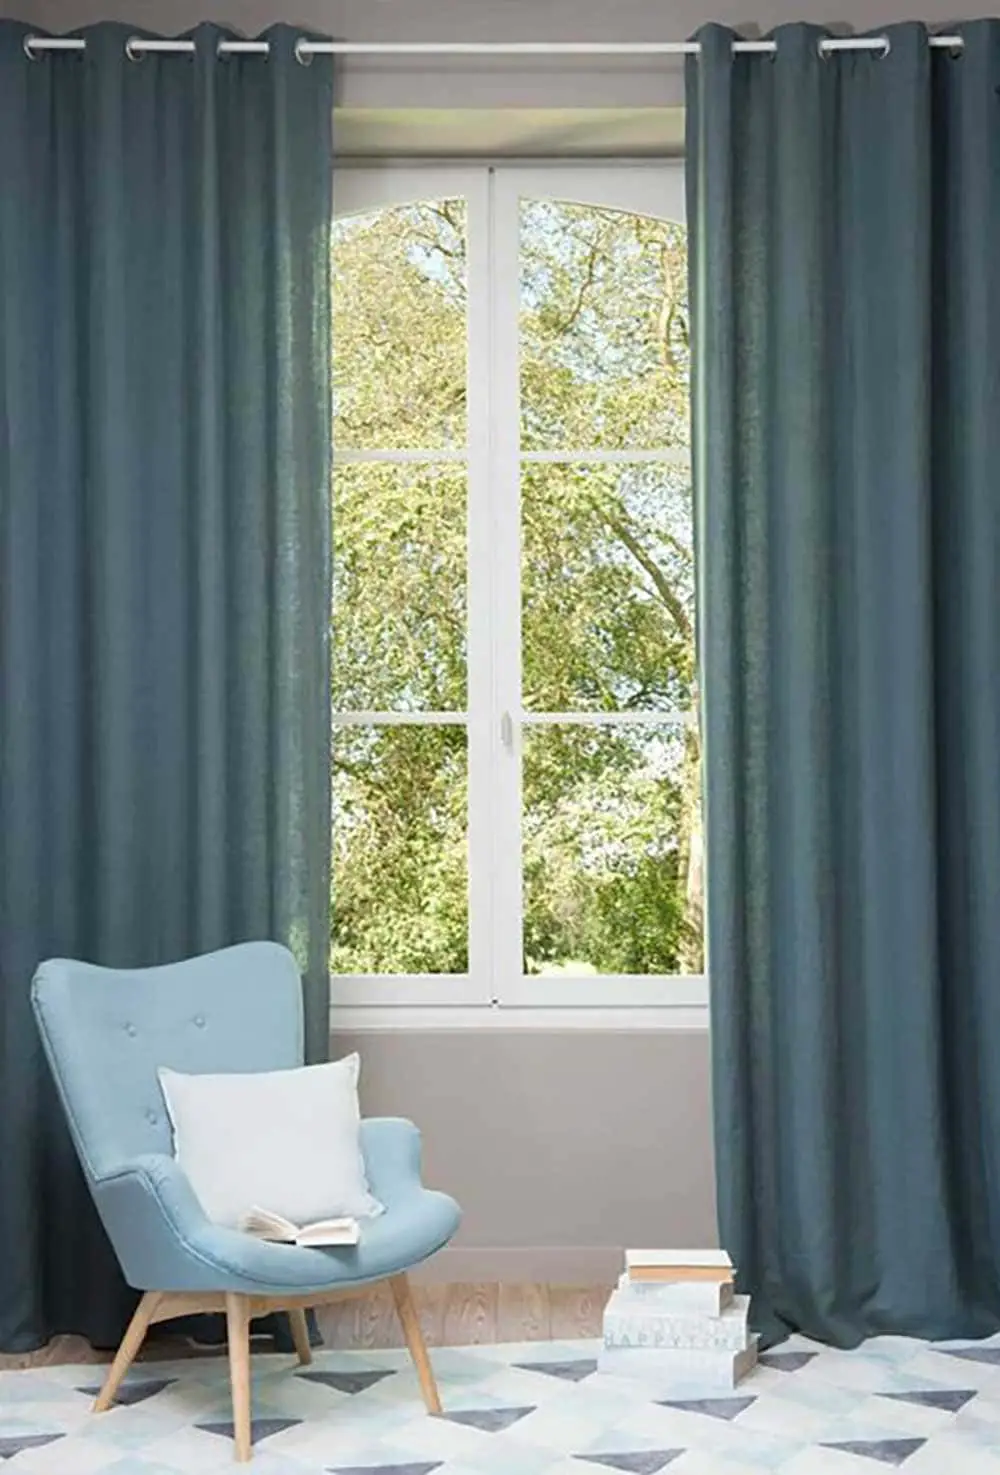 rideaux de couleur bleu pétrole dans pièce cosy avec fauteuil scandinave